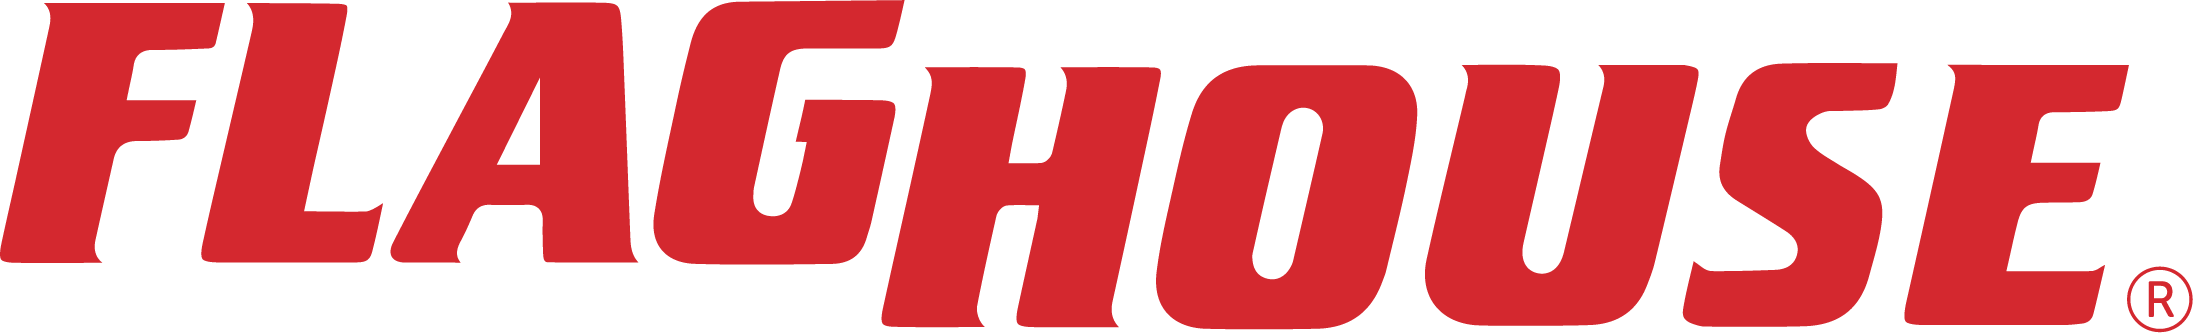 flaghouse logo